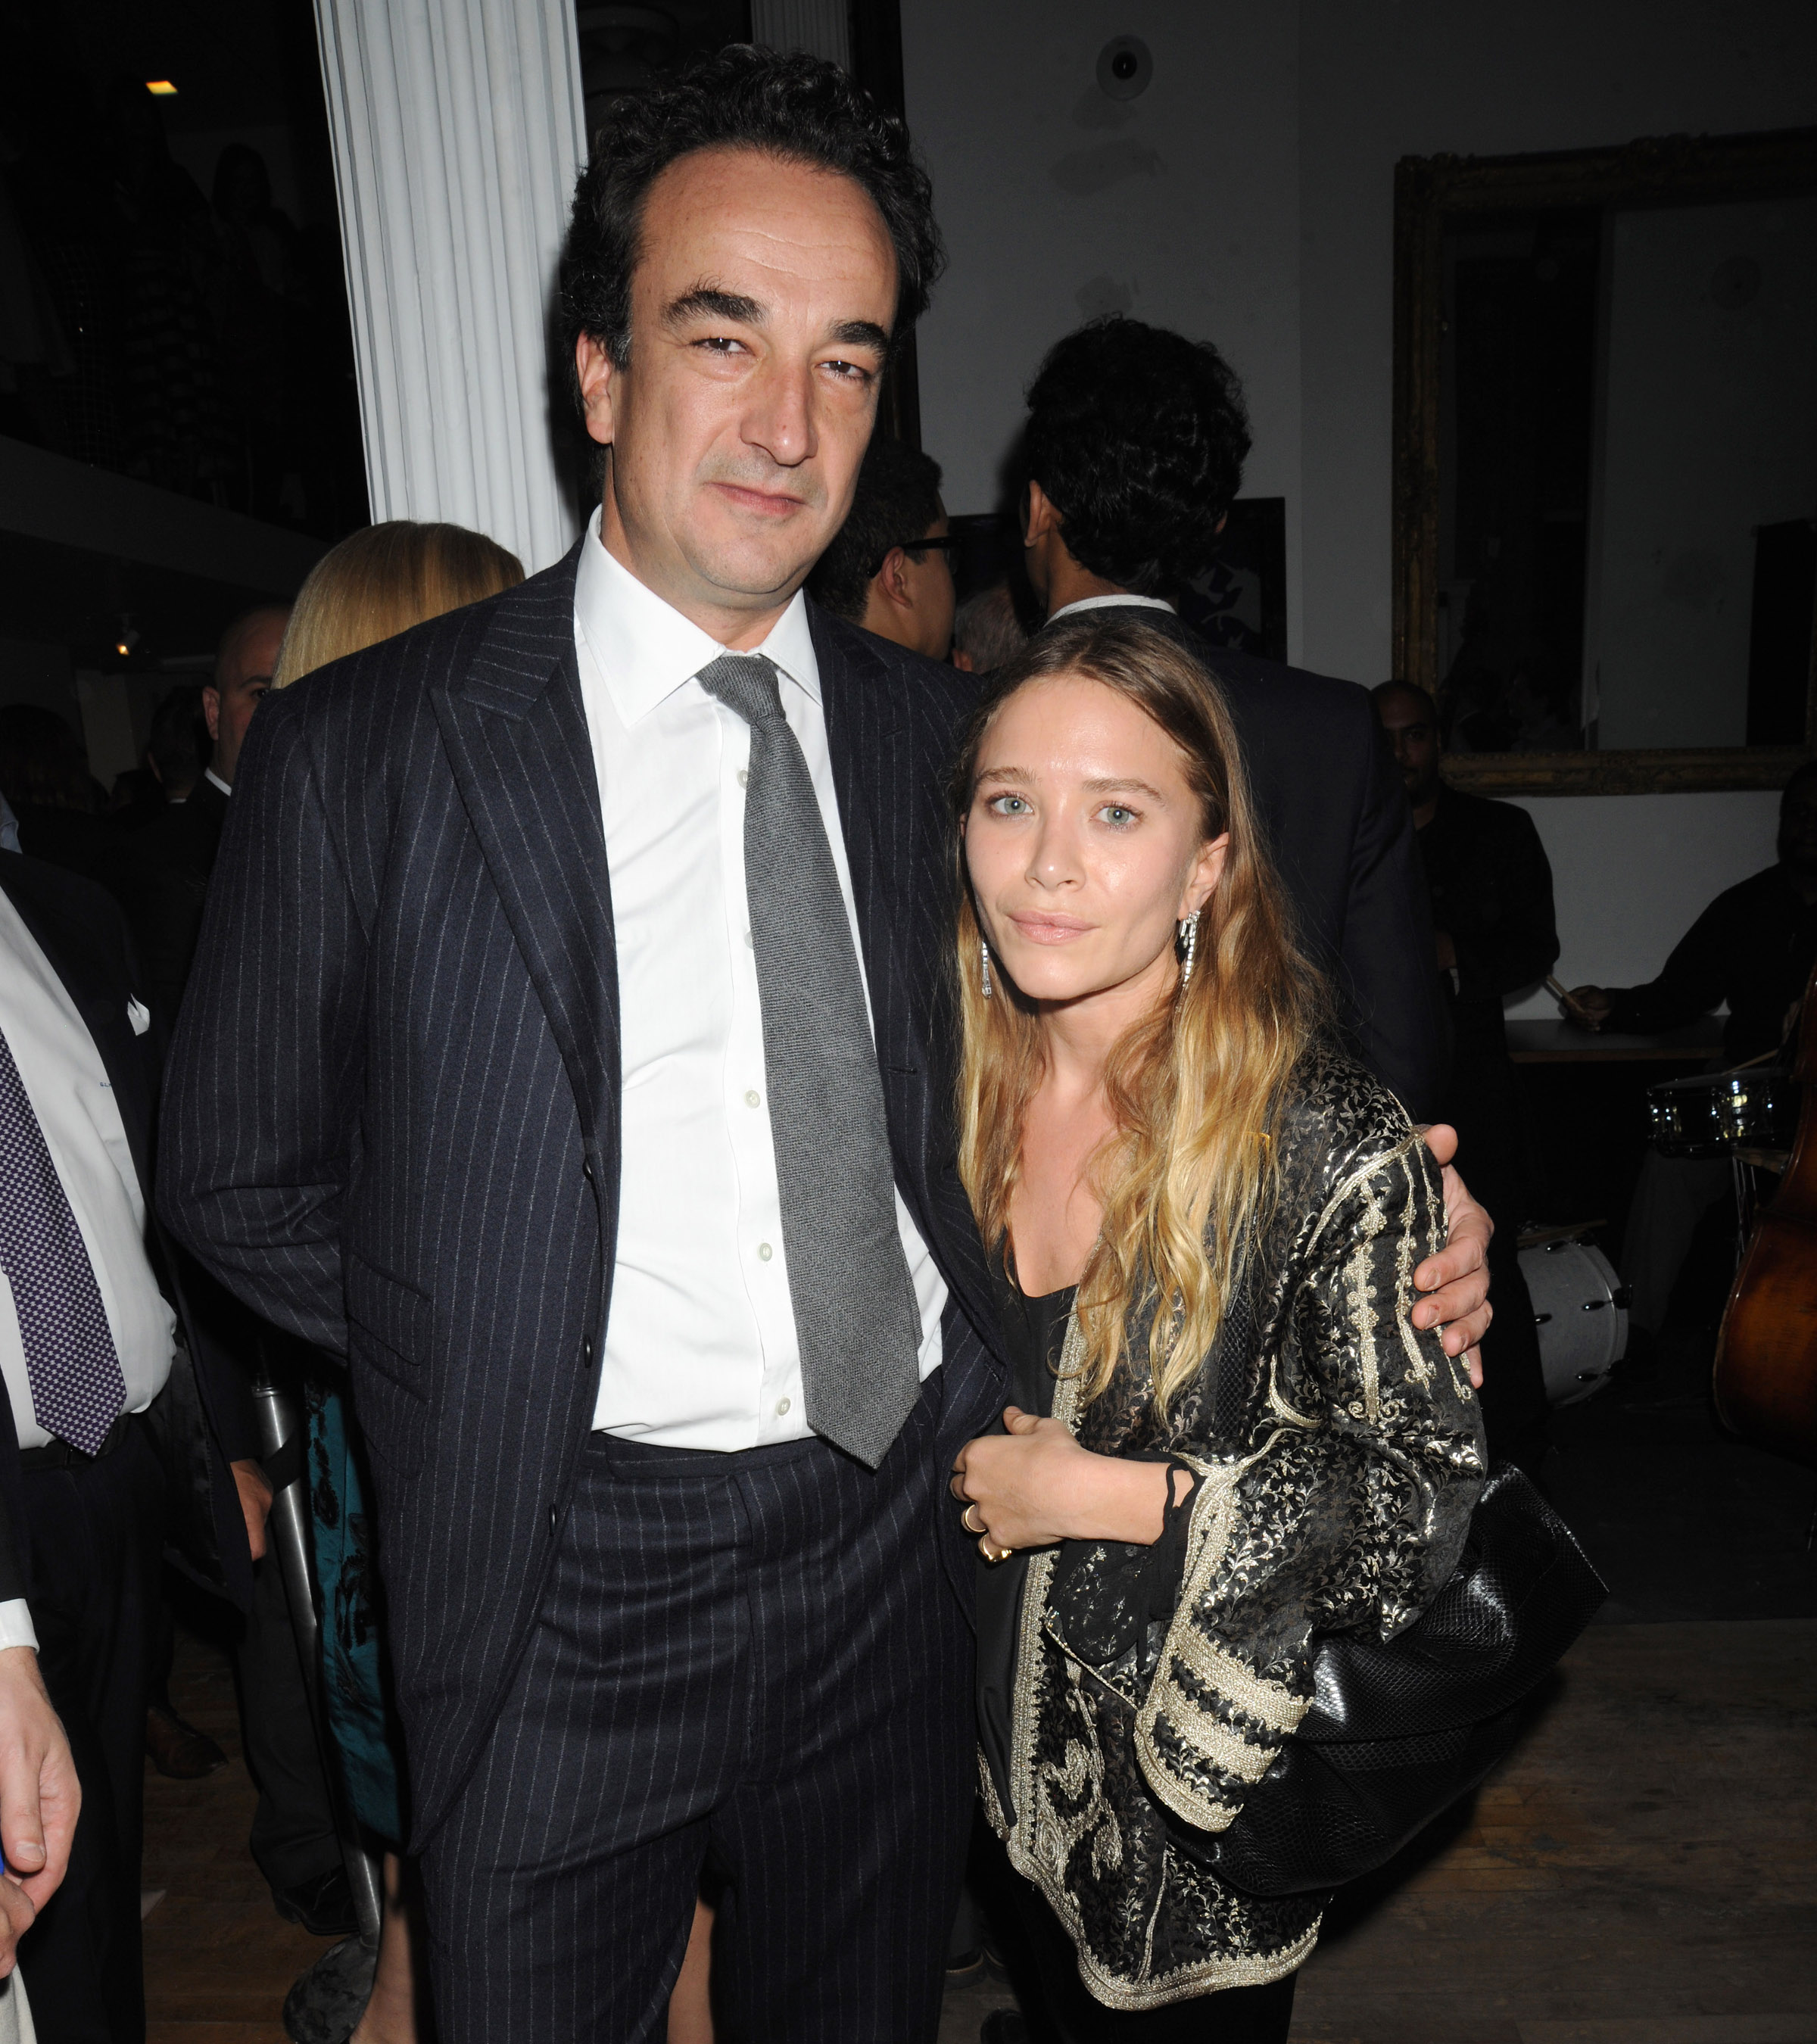 Μary Kate Olsen: Ζήτησε επείγουσα δικαστική εντολή για να χωρίσει τον αδελφό του Σαρκοζί!